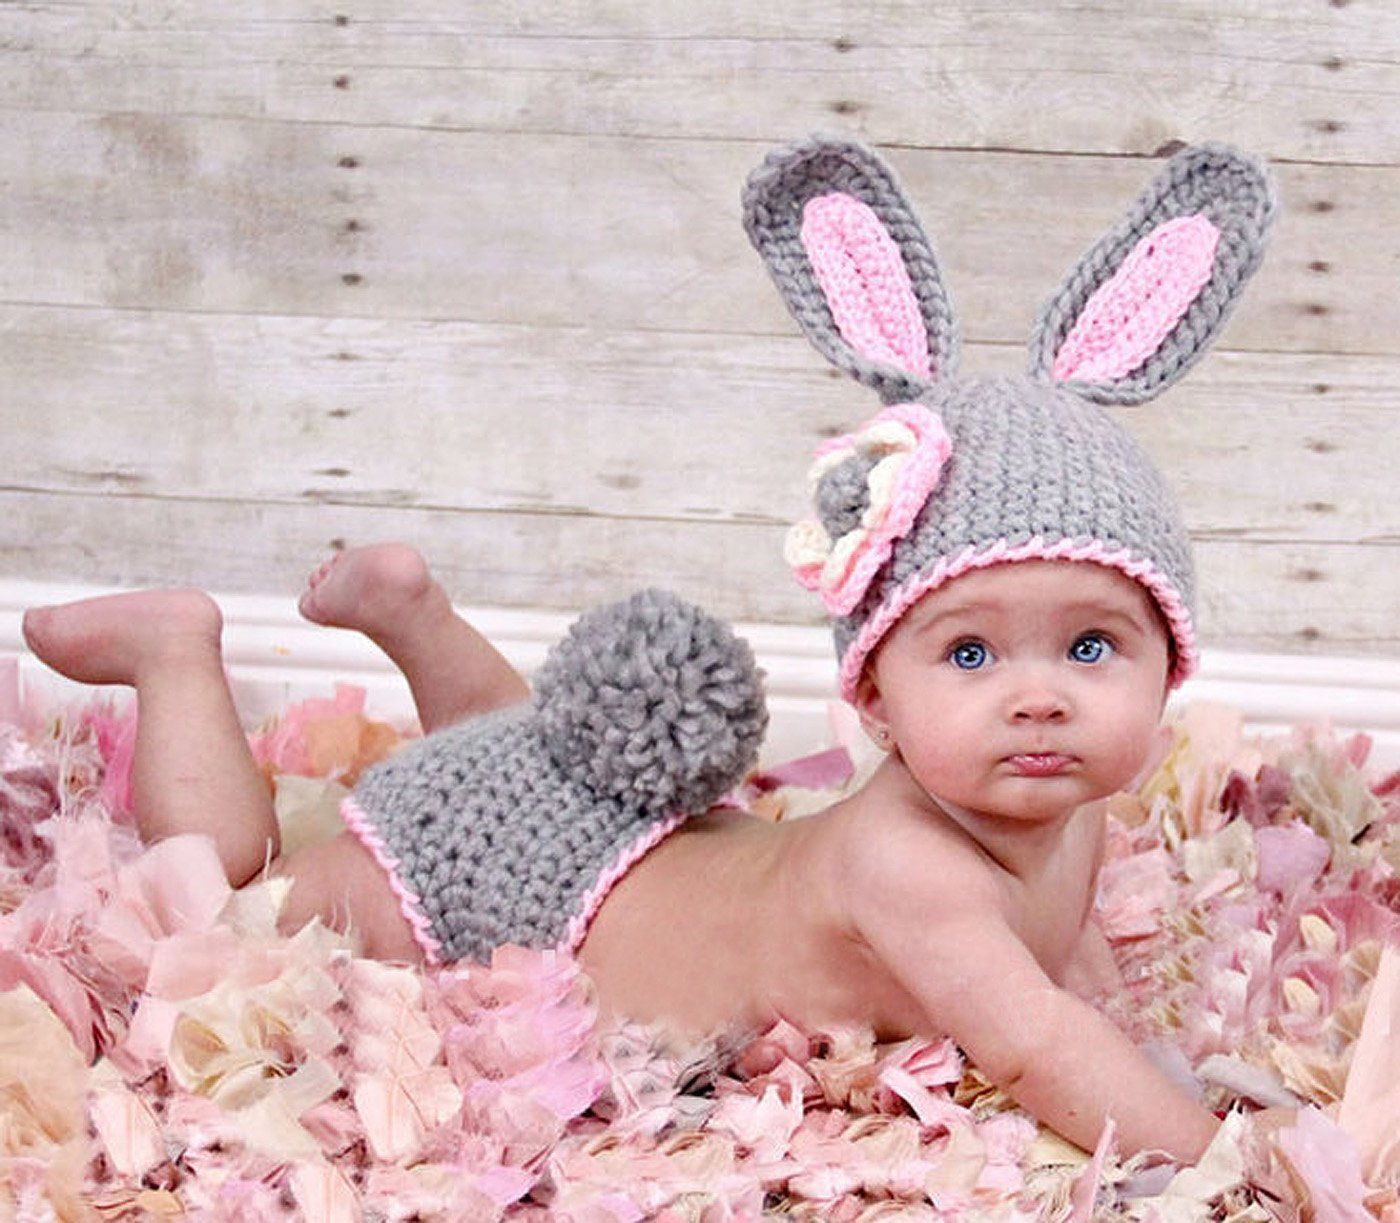 Baby Fotografie Strick Mütze Kostüm Fotoshooting Häkelkostüm Neugeborenen Hase